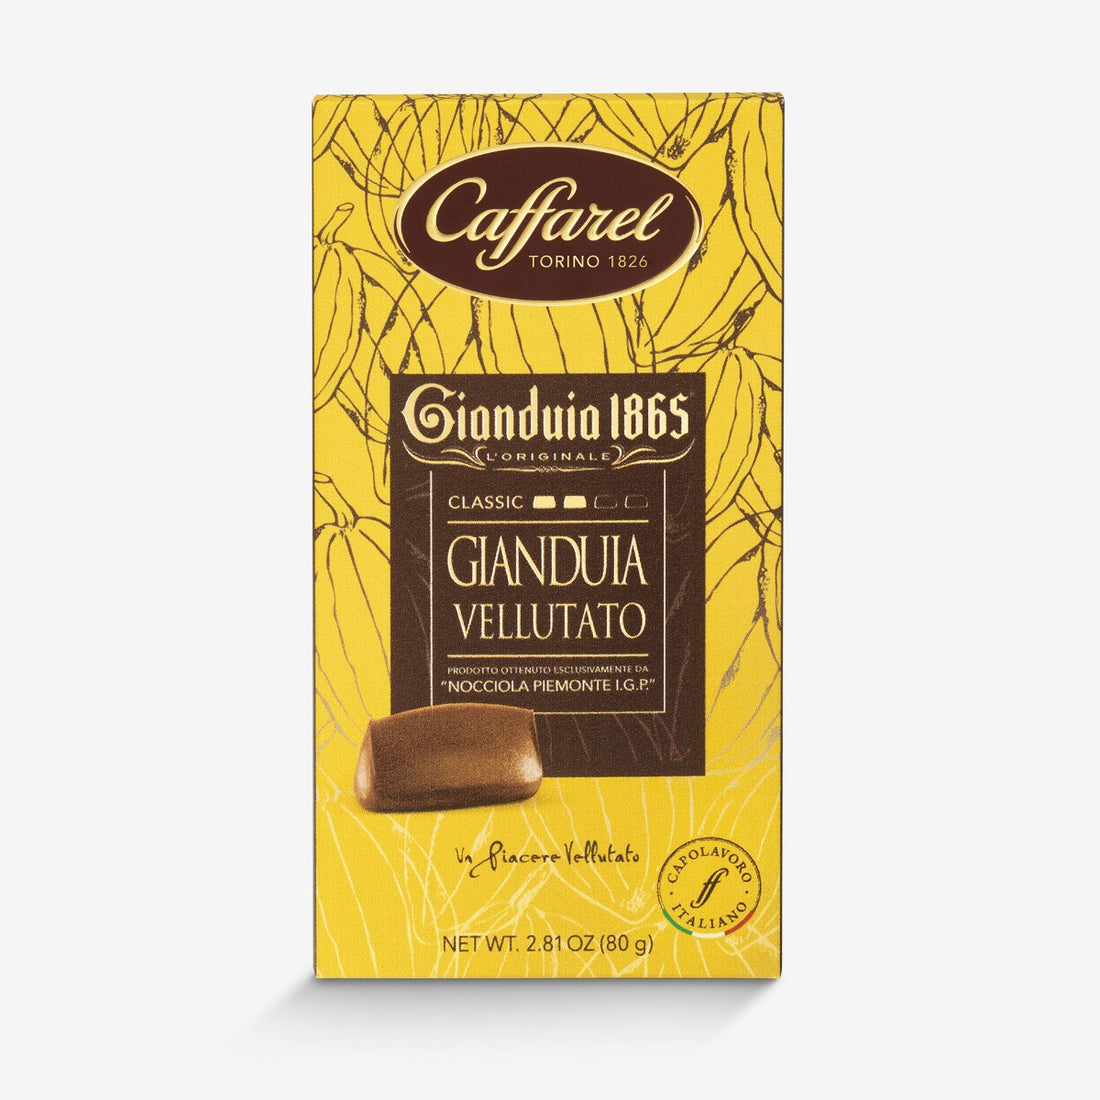 Gianduia 1865: Classic Gianduia bar